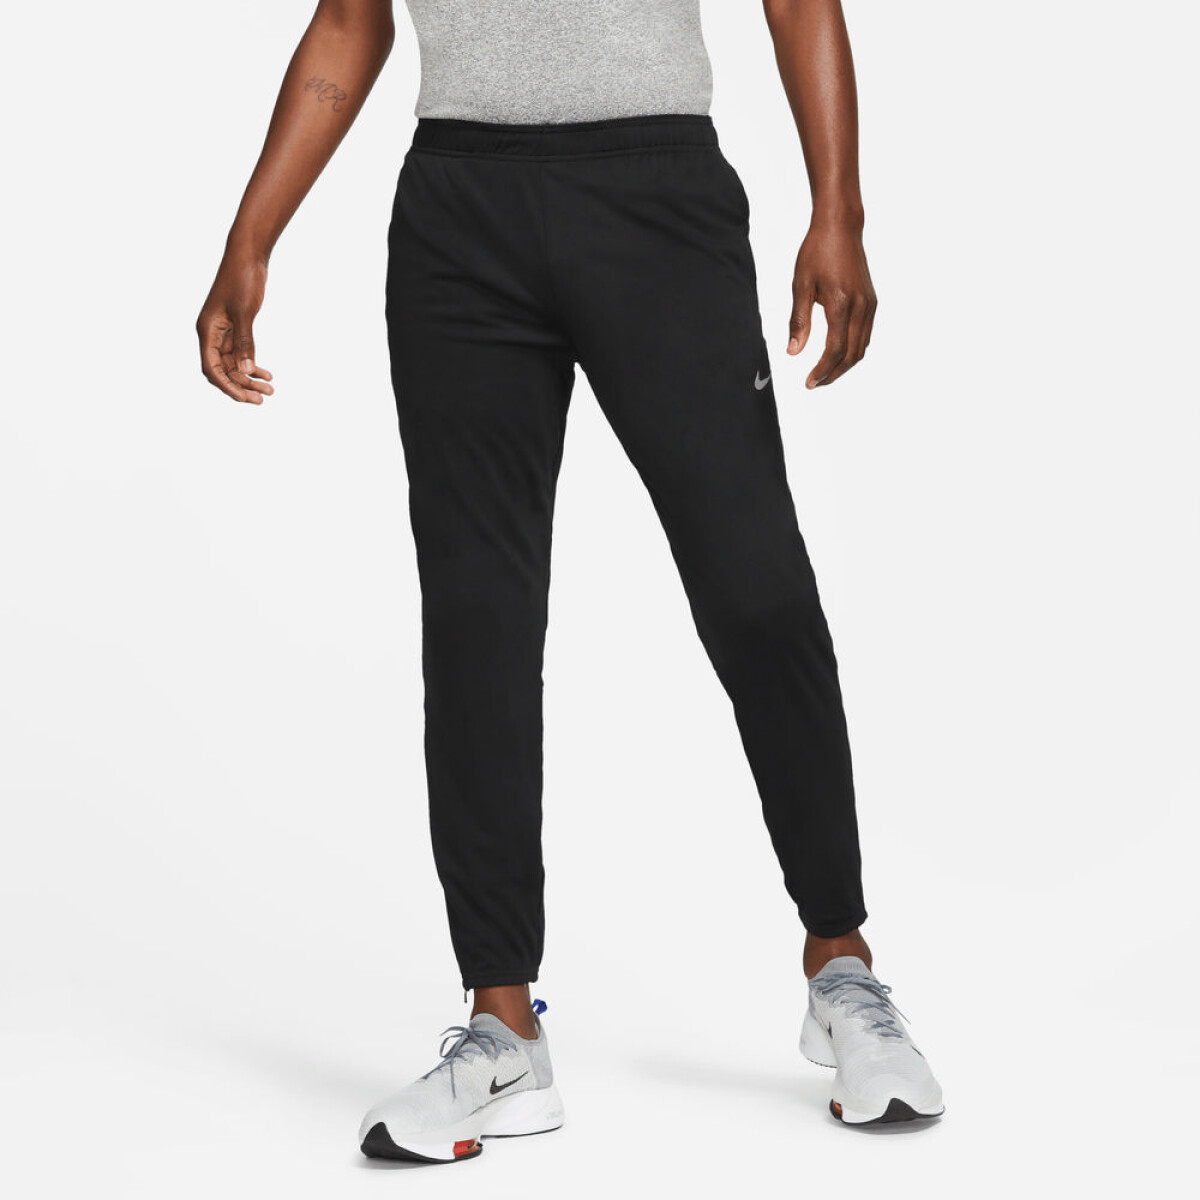 Pantalón Nike Dri-fit Challenger Knit 